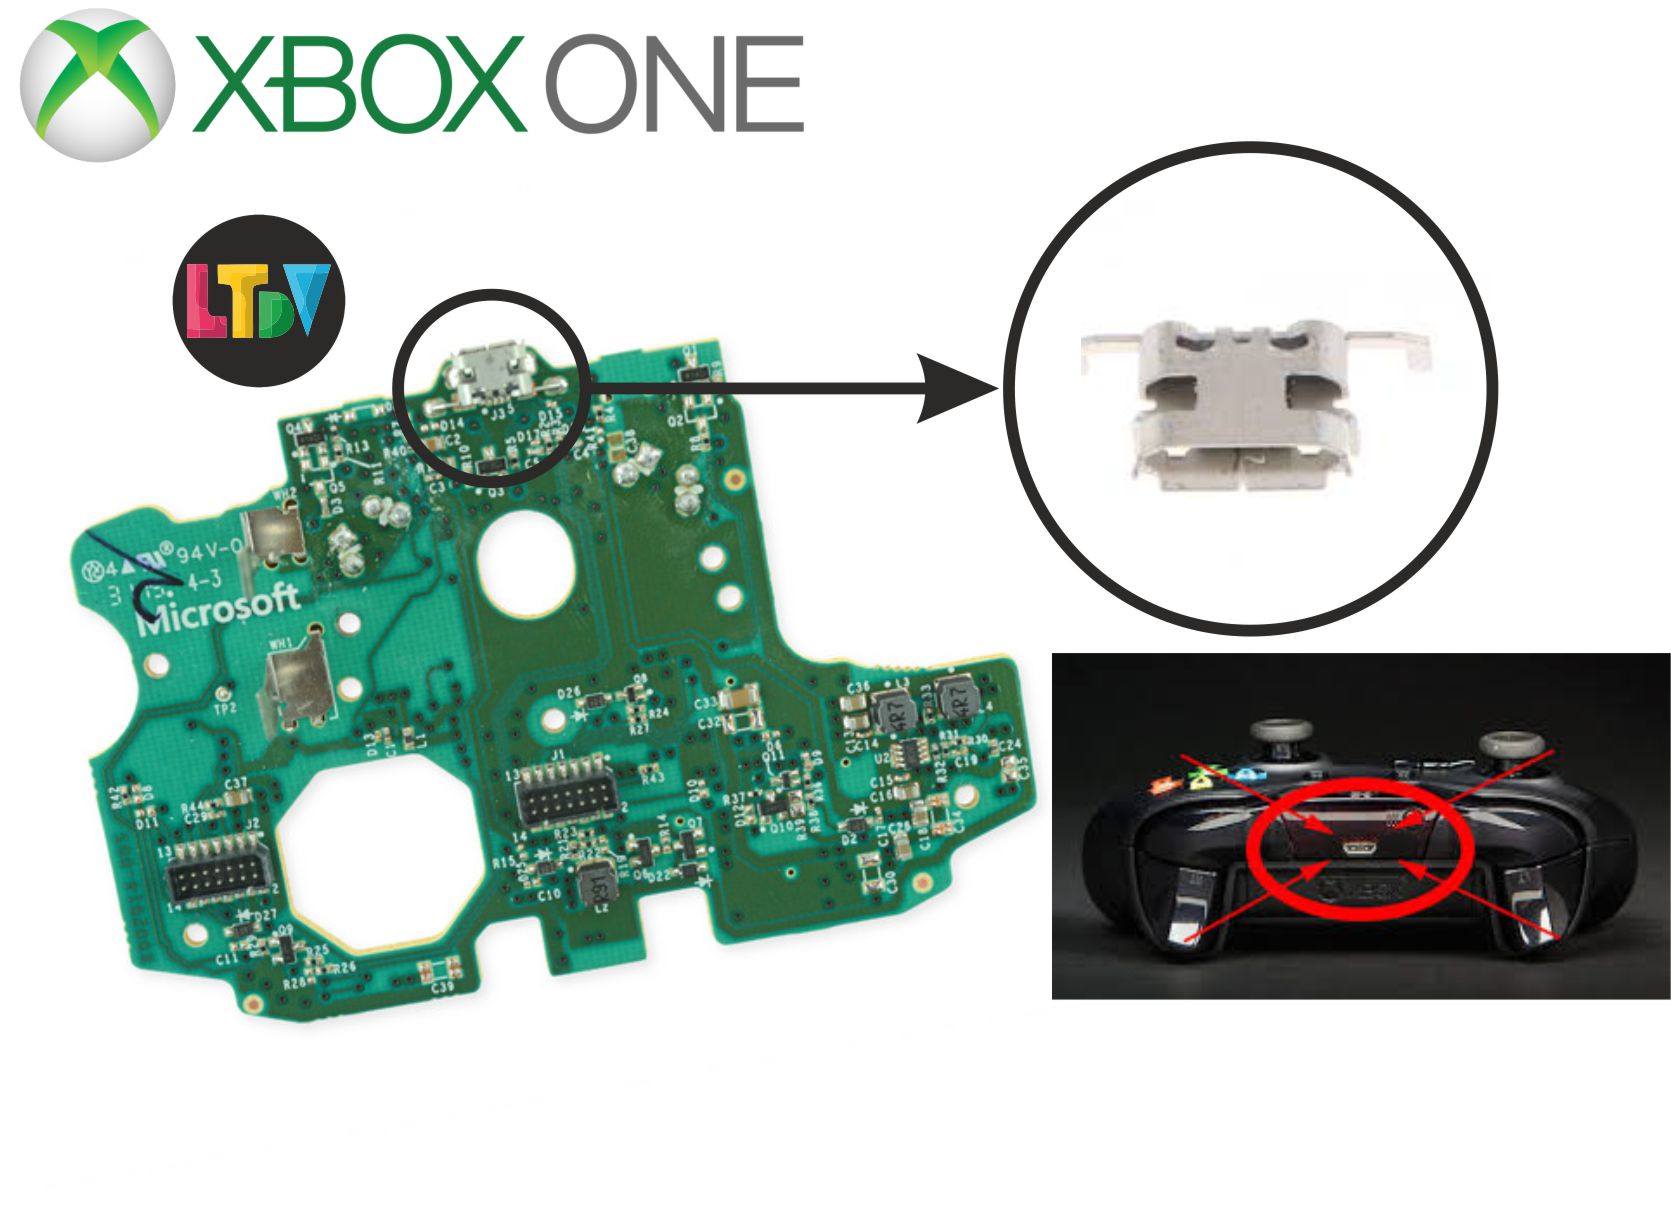 Se te ha roto el mando de la Xbox? Microsoft te pone fácil el repararlo